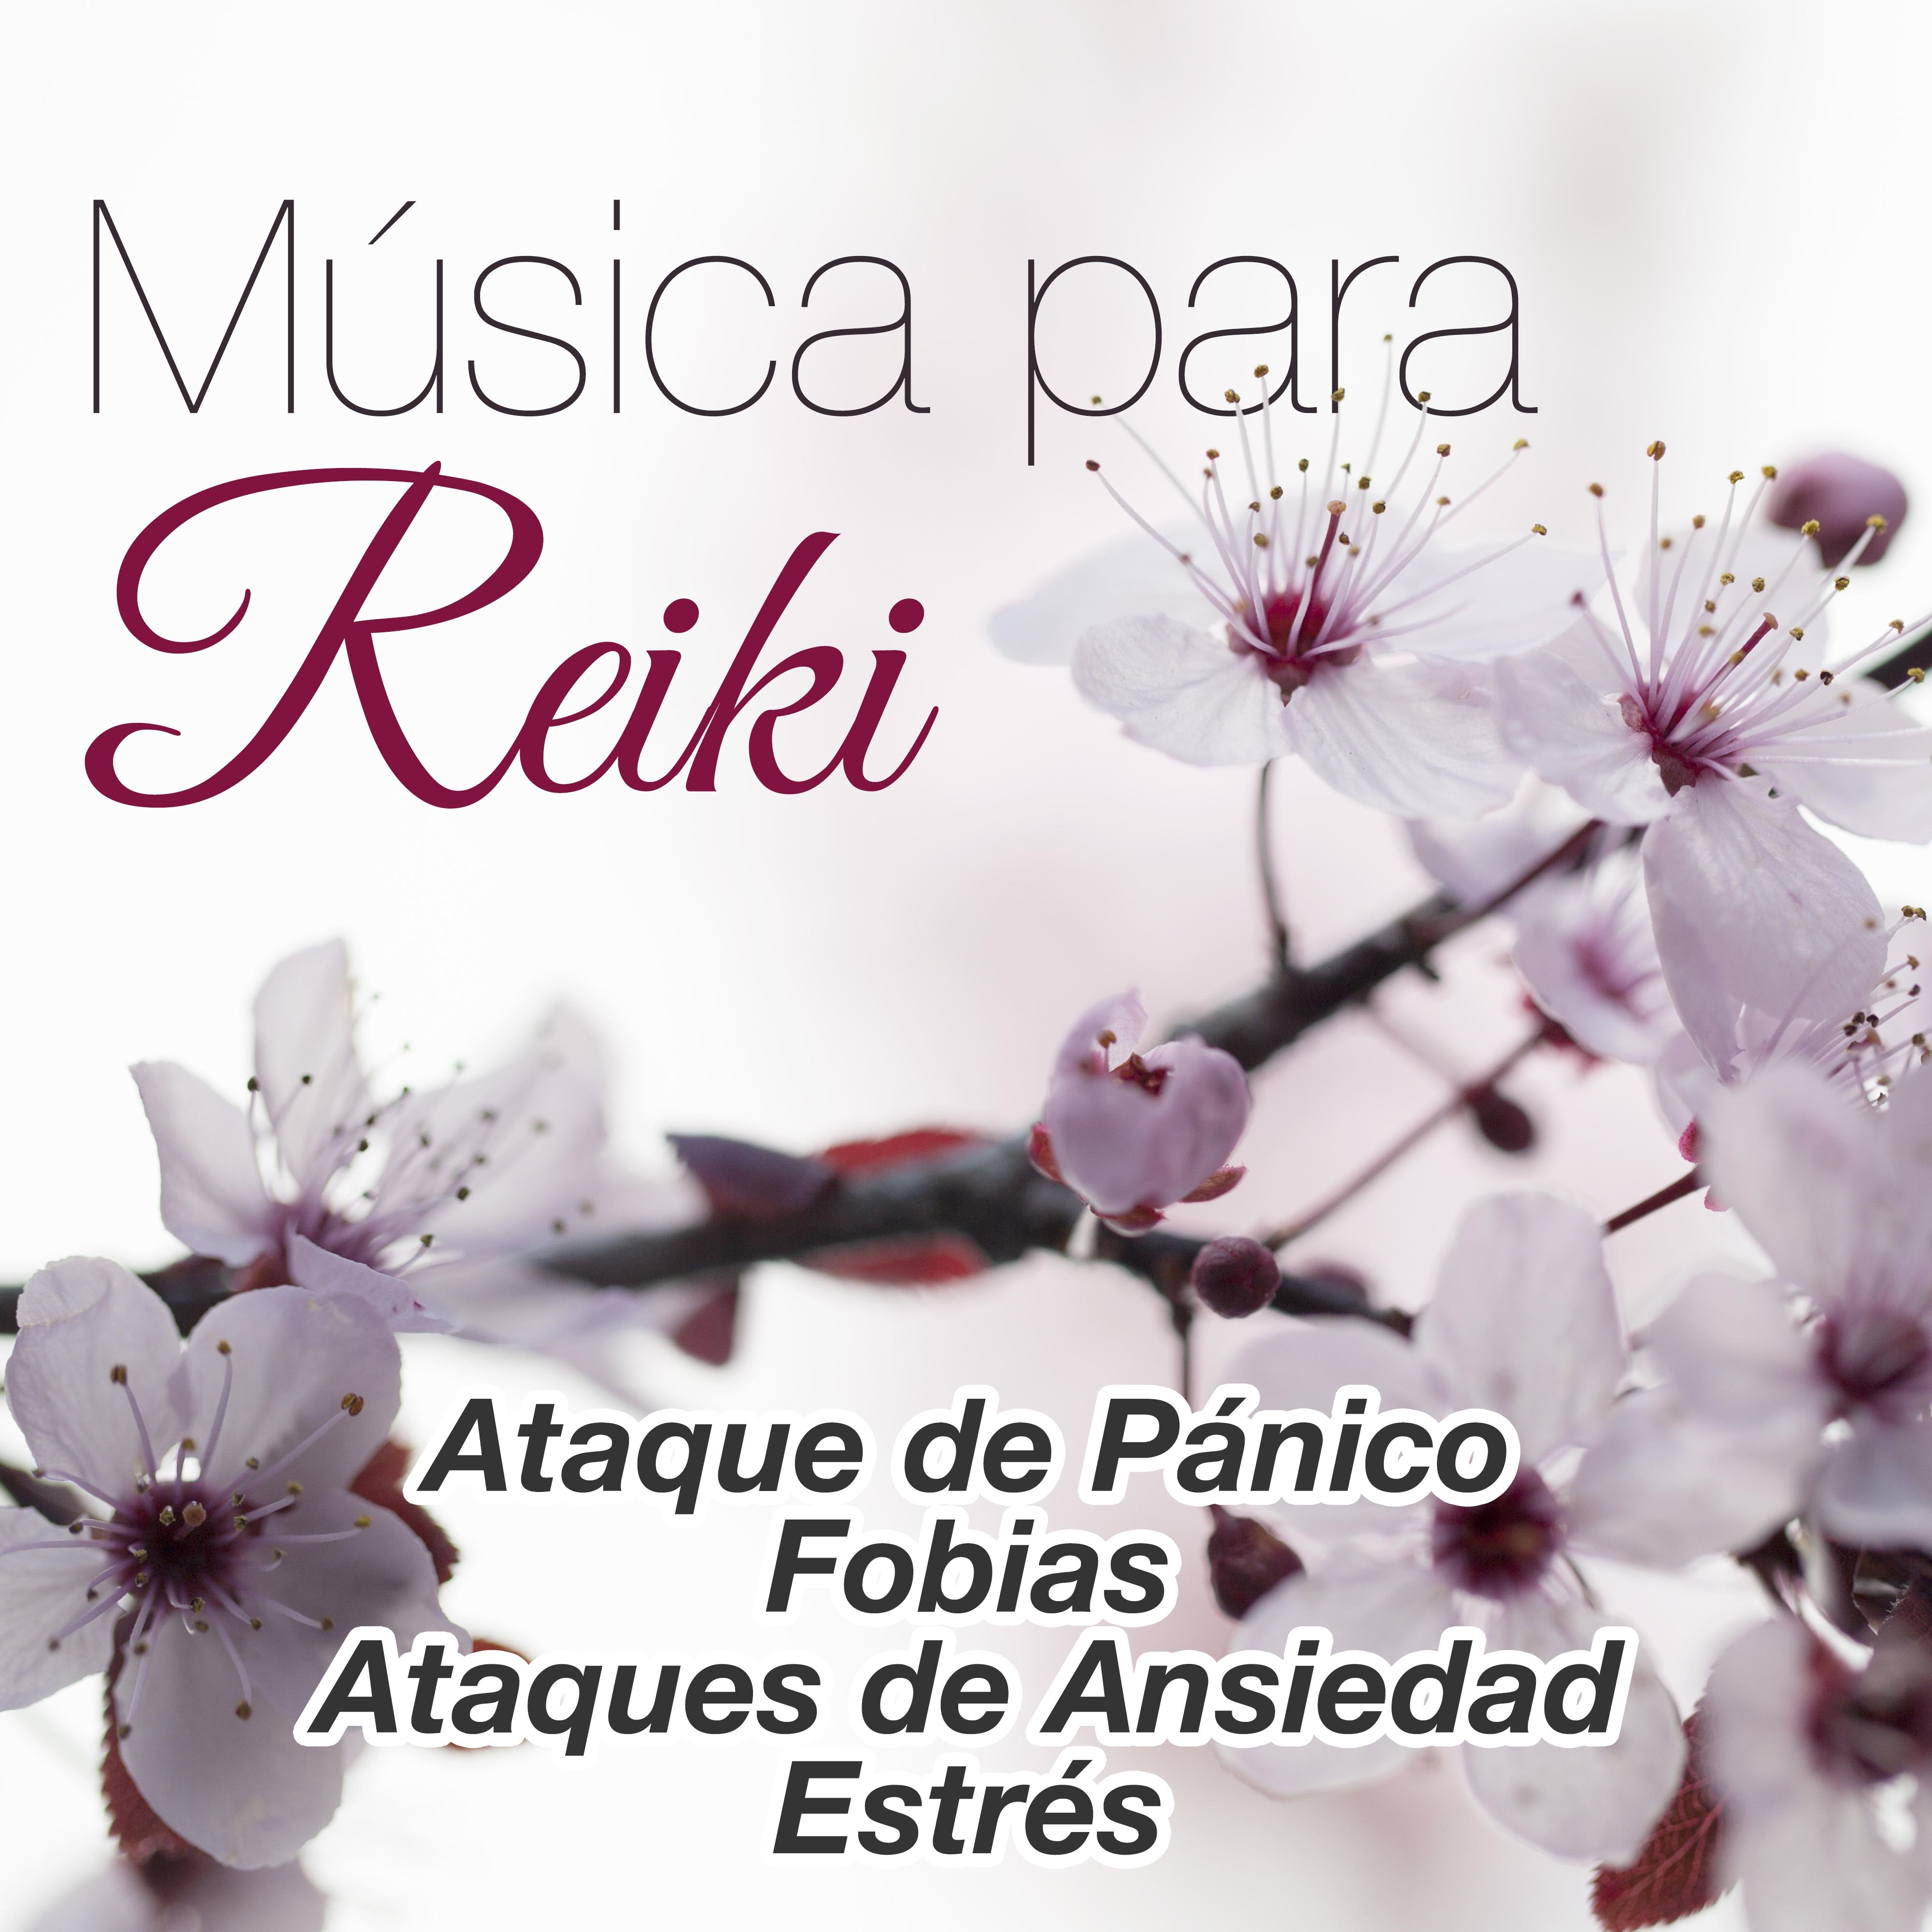 Música para Reiki - Canciones Sugeridas para Ataque de Pánico, Fobias, Ataques de Ansiedad y Estrés